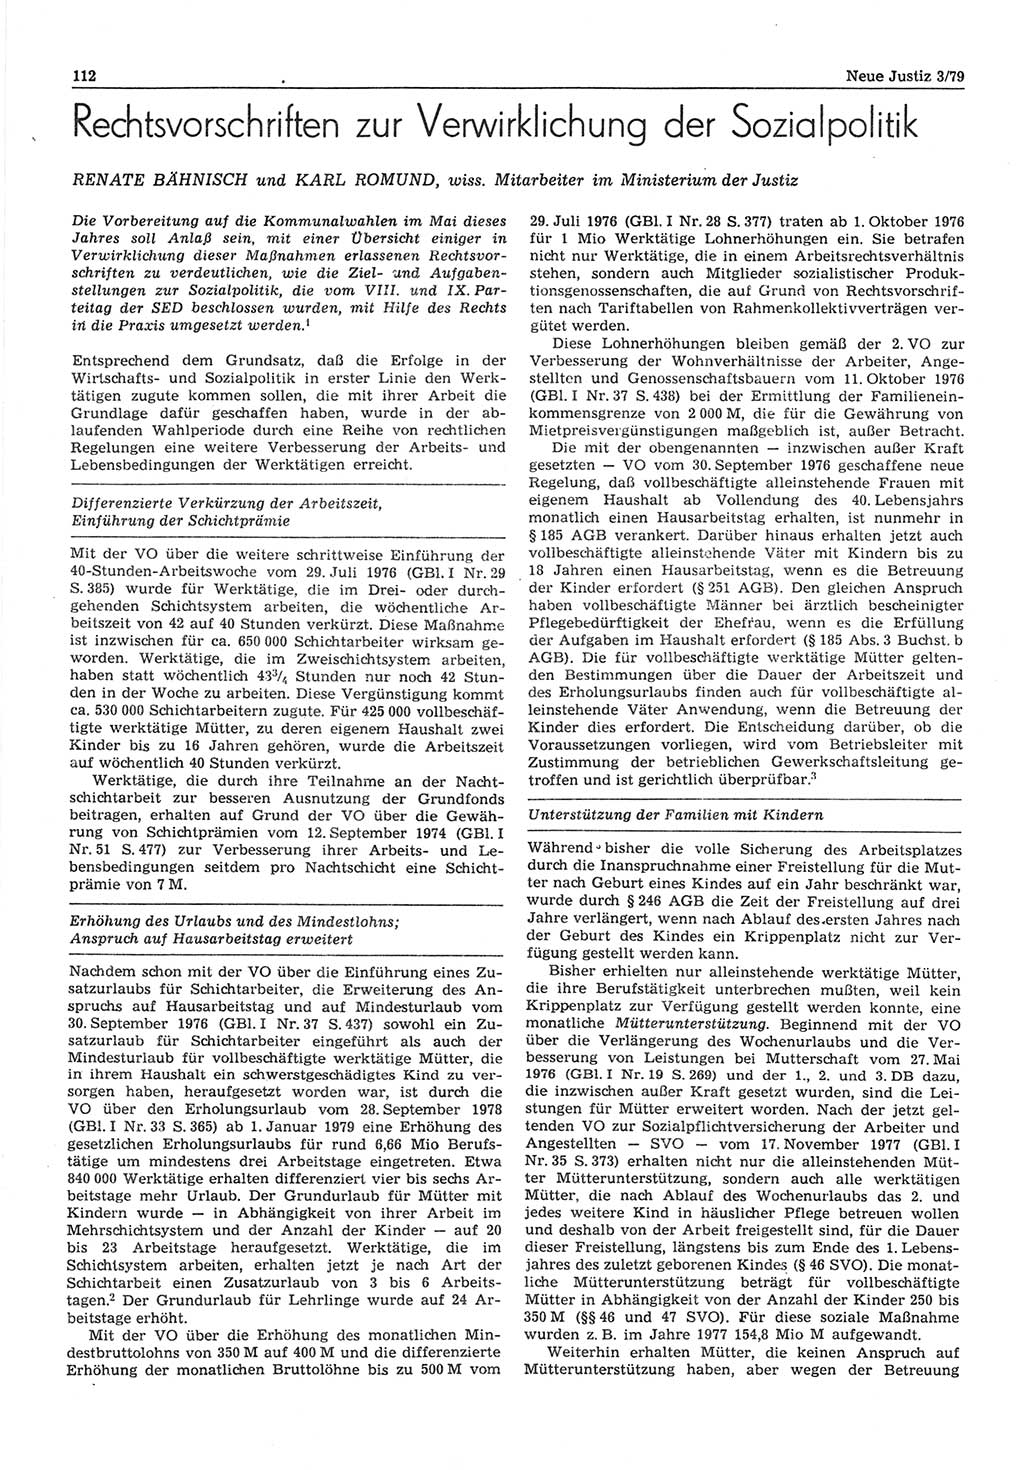 Neue Justiz (NJ), Zeitschrift für sozialistisches Recht und Gesetzlichkeit [Deutsche Demokratische Republik (DDR)], 33. Jahrgang 1979, Seite 112 (NJ DDR 1979, S. 112)